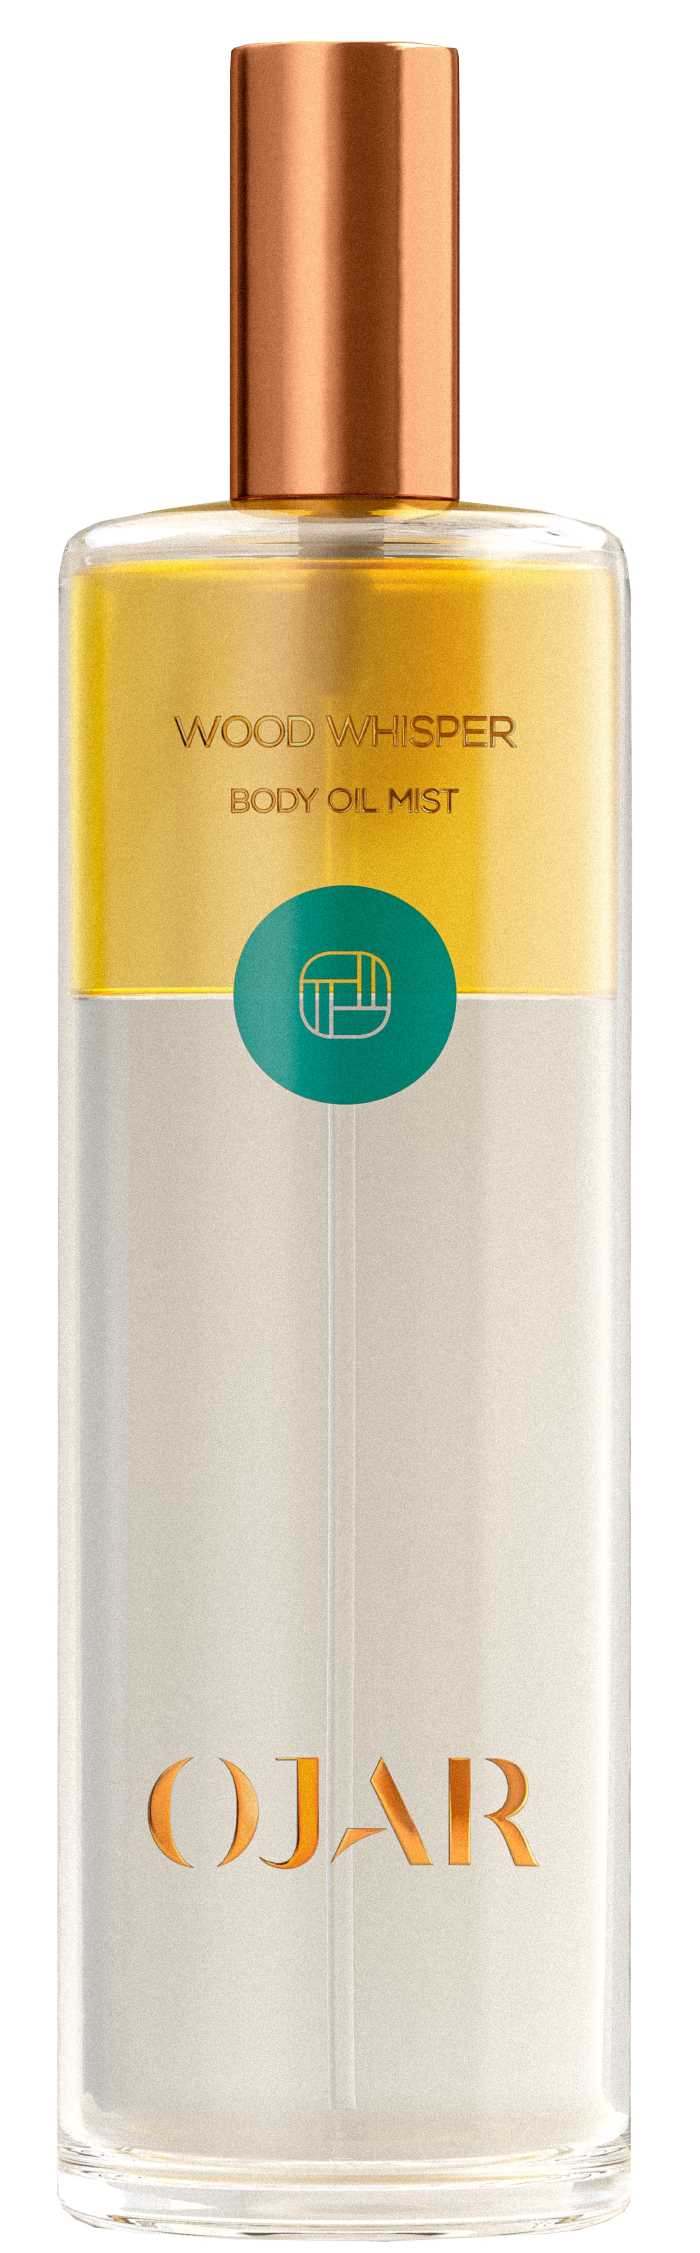 body oil mist - wood whisper